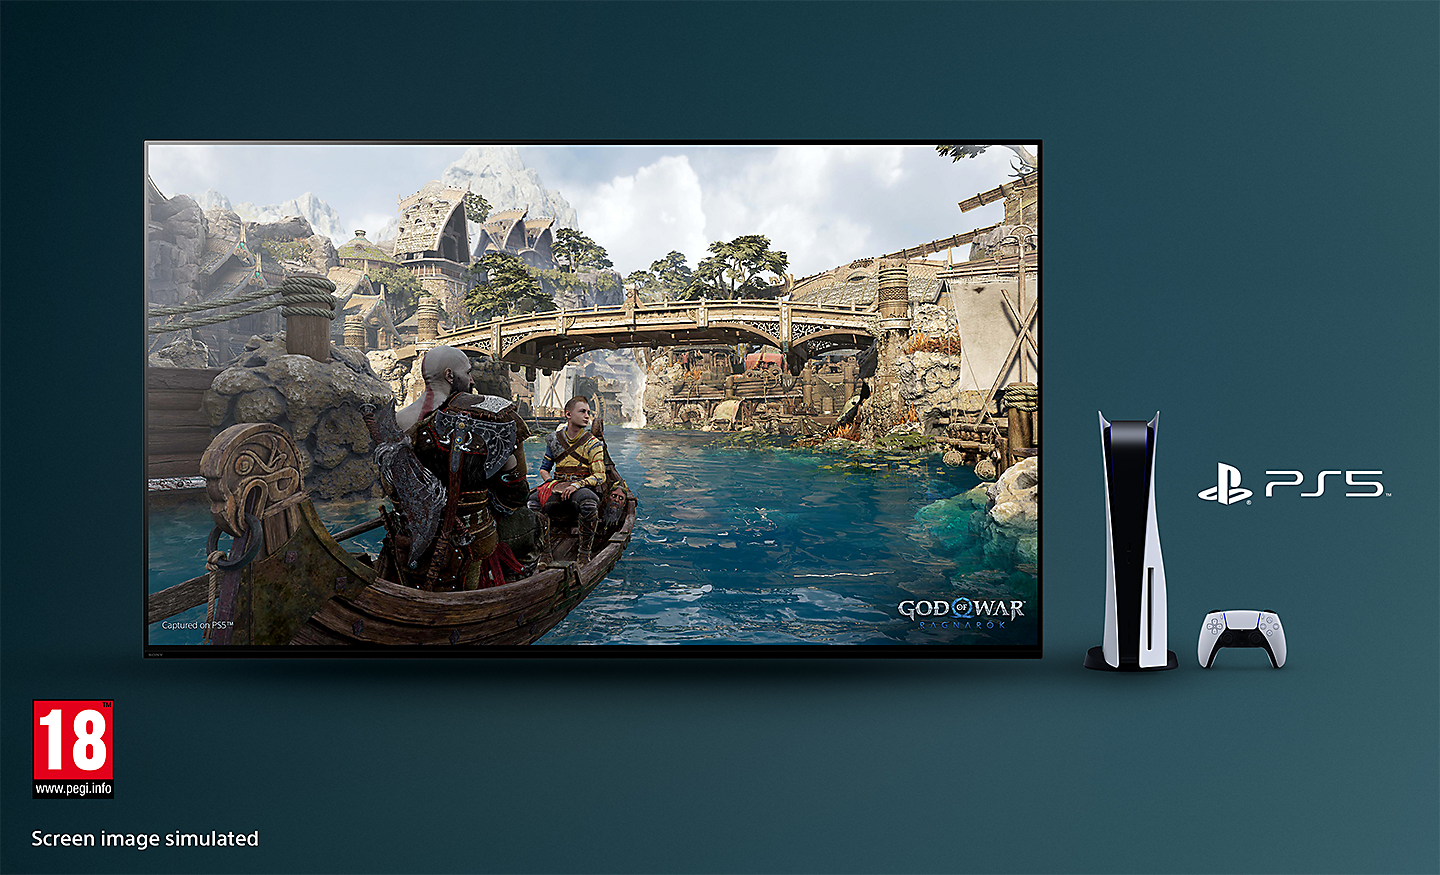 BRAVIA Fernseher mit Screenshot von God of War: Ragnarök, bei dem ein Boot auf einem Fluss und eine Brücke im Hintergrund gezeigt werden, mit der PS5™ Konsole, Controller und PS5™ Logo rechts vom Fernseher und dem Logo von PEGI 18 unten rechts